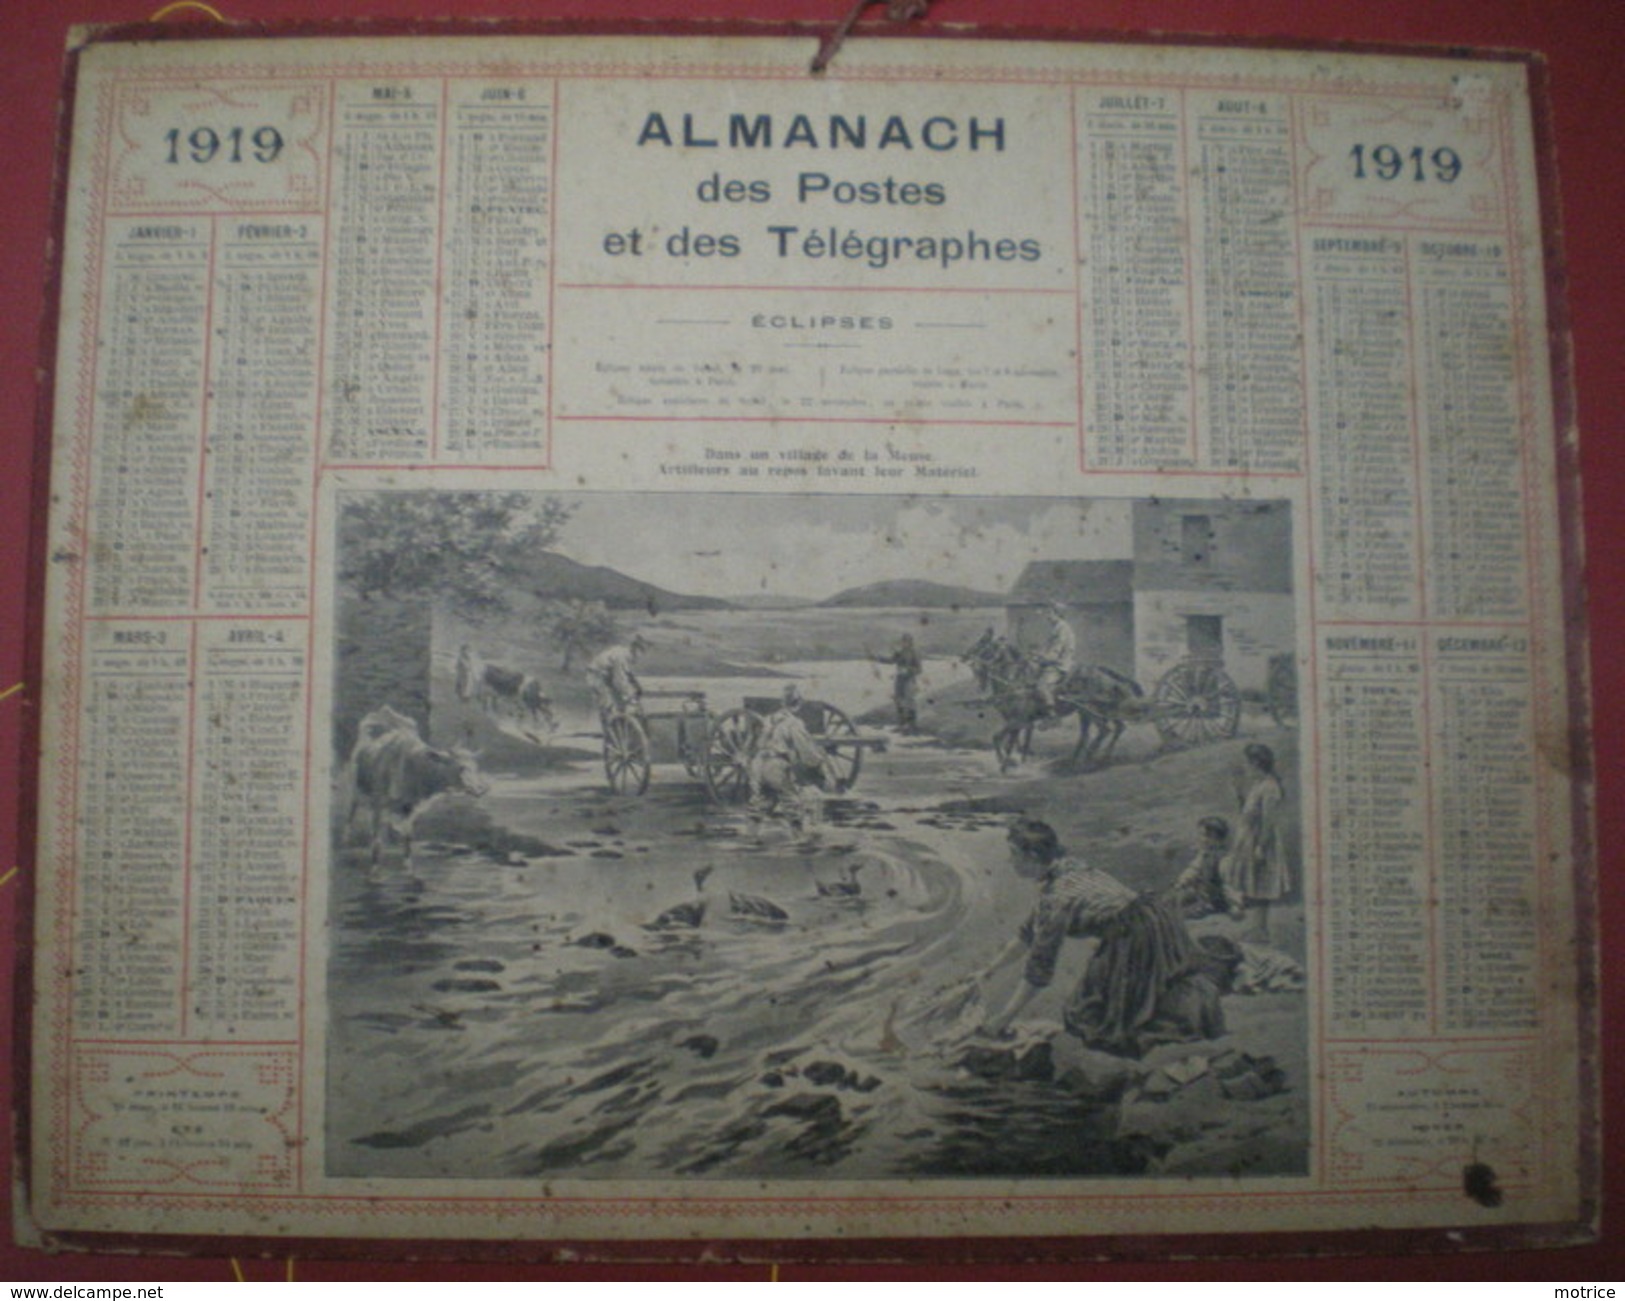 ALMANACH DES POSTES ET DES TÉLÉGRAPHES (Eclipses)  1919 - Dans Un Village De La Meuse, Artilleurs Au Repos. - Grand Format : 1901-20